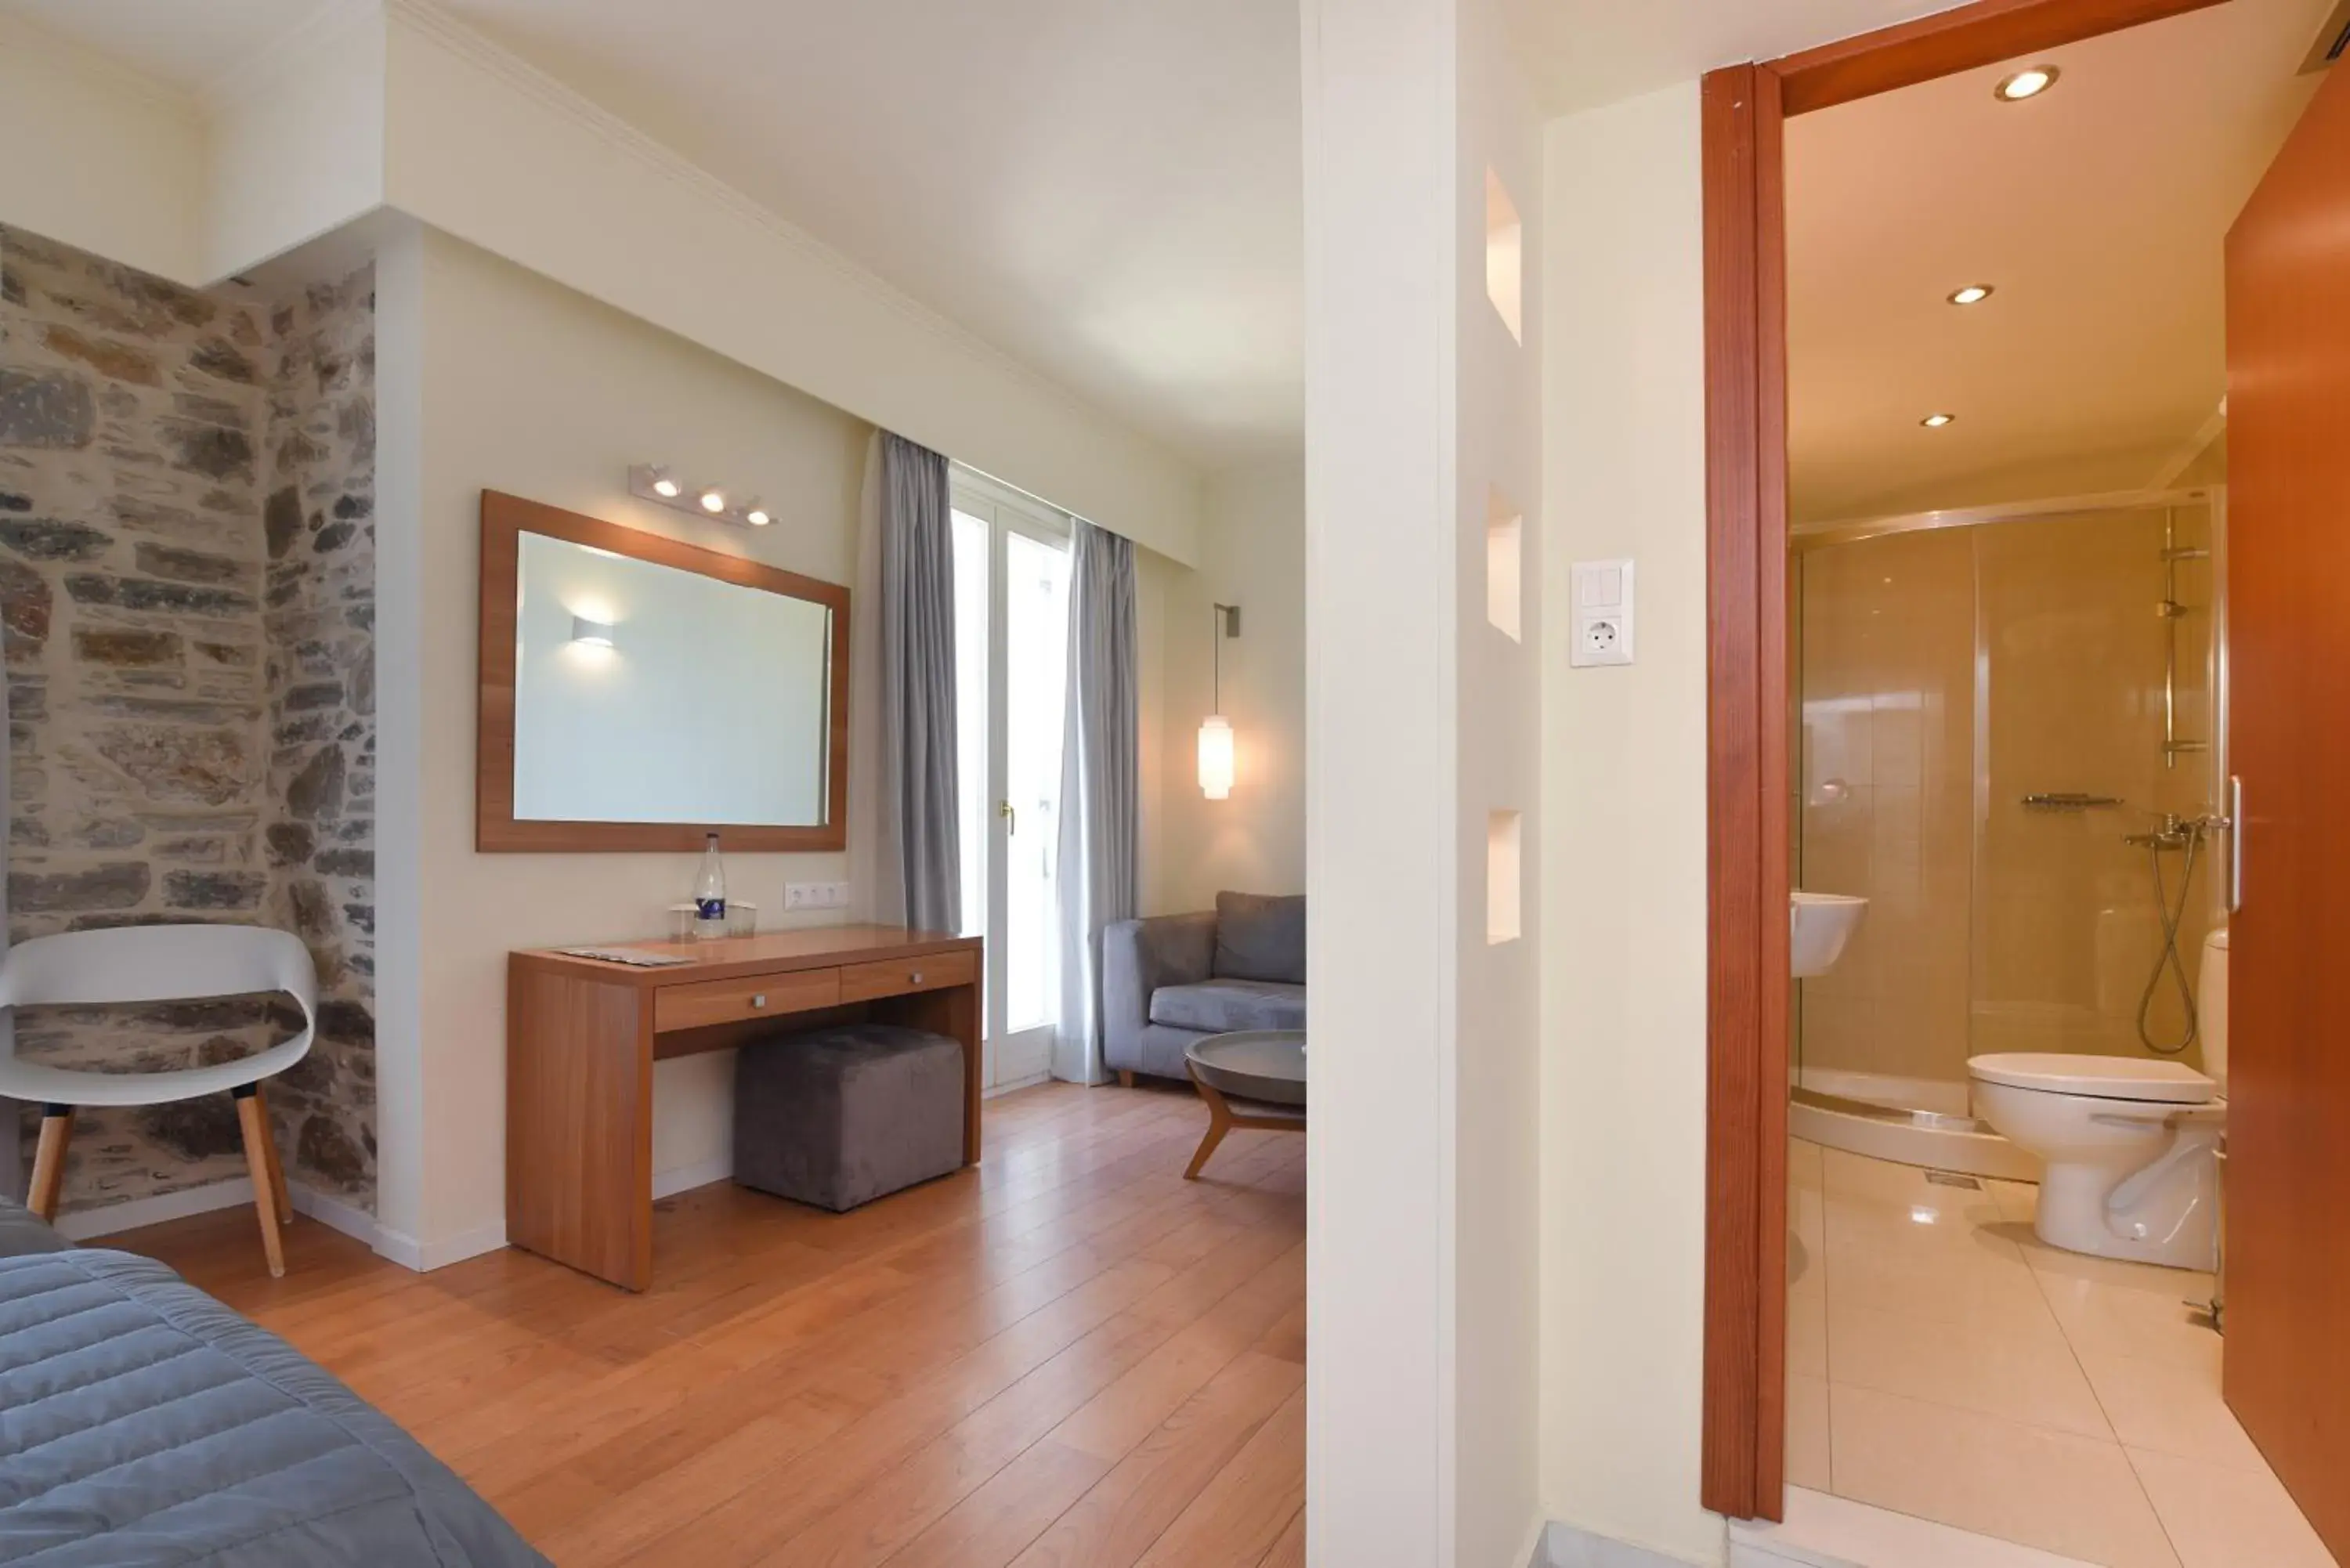 Bedroom, Bathroom in Hotel Hermes